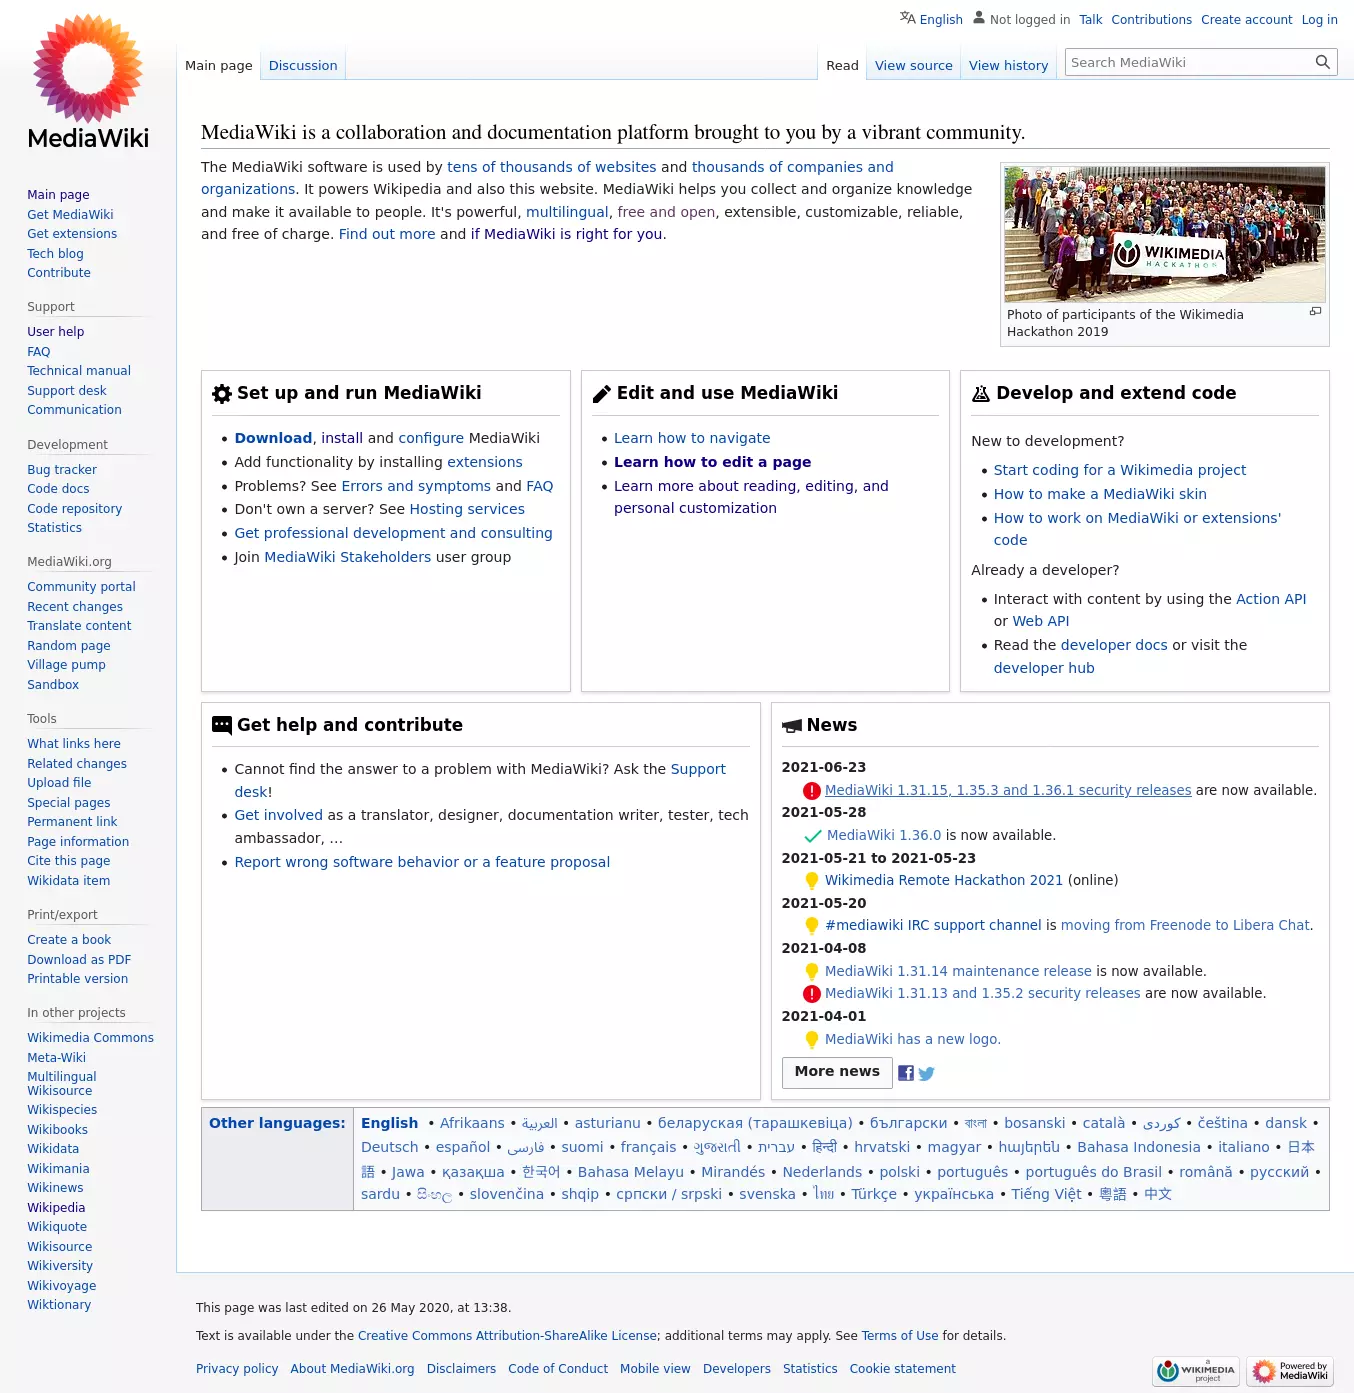 Screenshot of the MediaWiki homepage